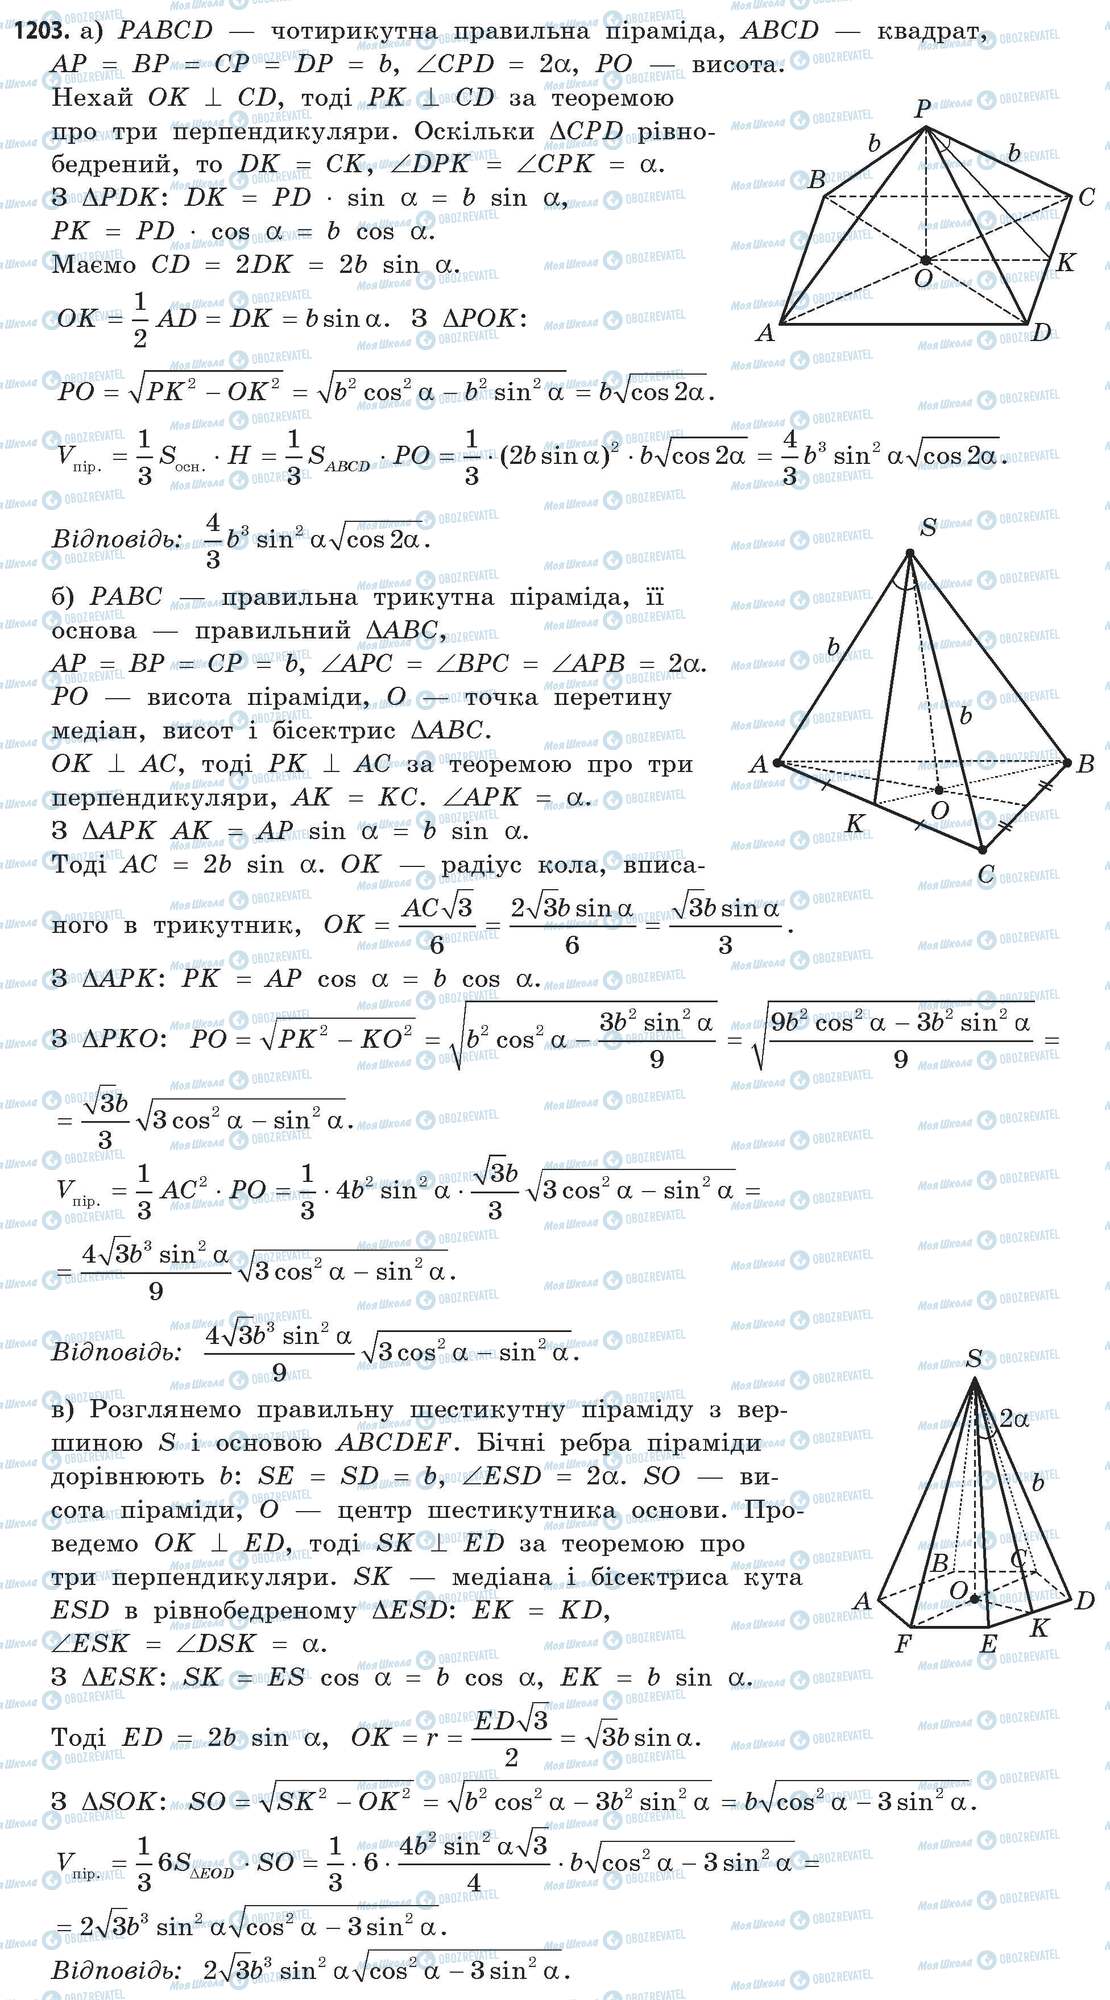 ГДЗ Математика 11 класс страница 1203